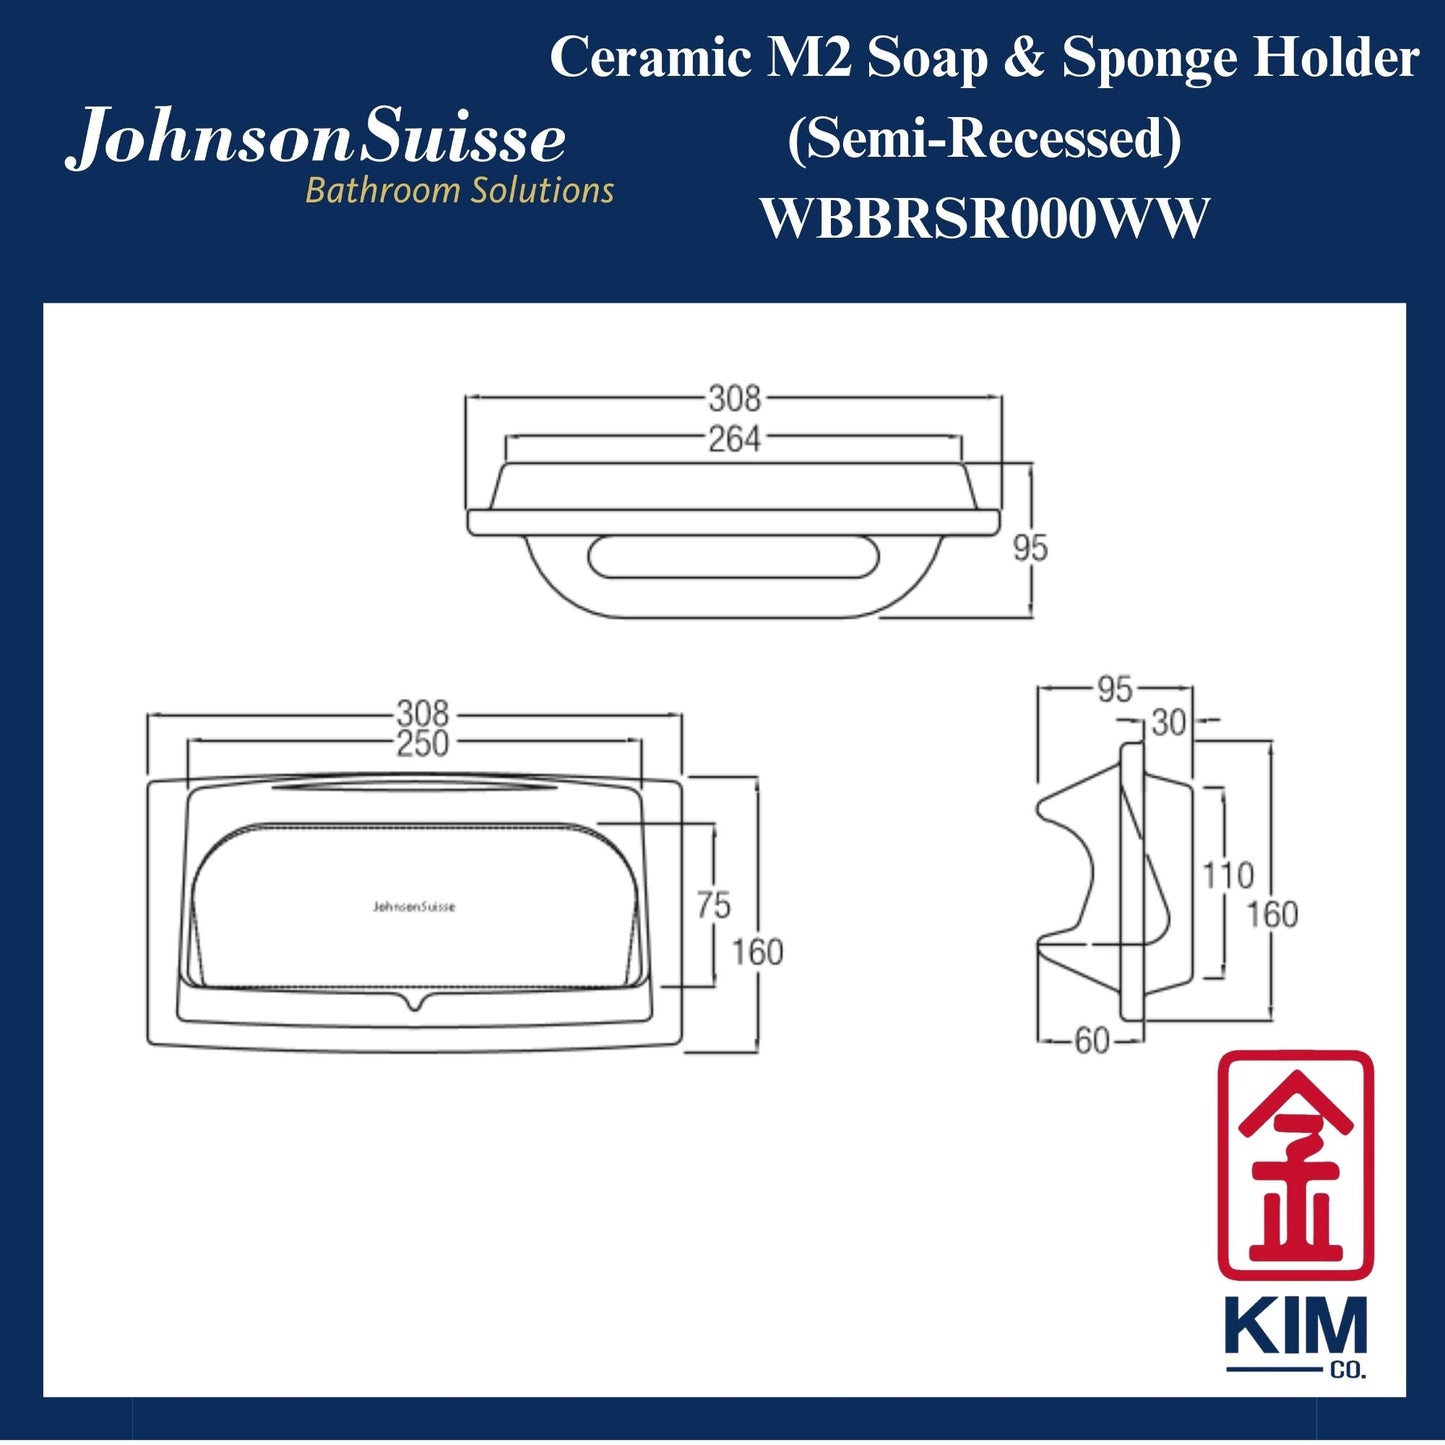 Johnson Suisse M2 Ceramic Semi Recessed Soap & Sponge Holder (WBBRSR000WW)